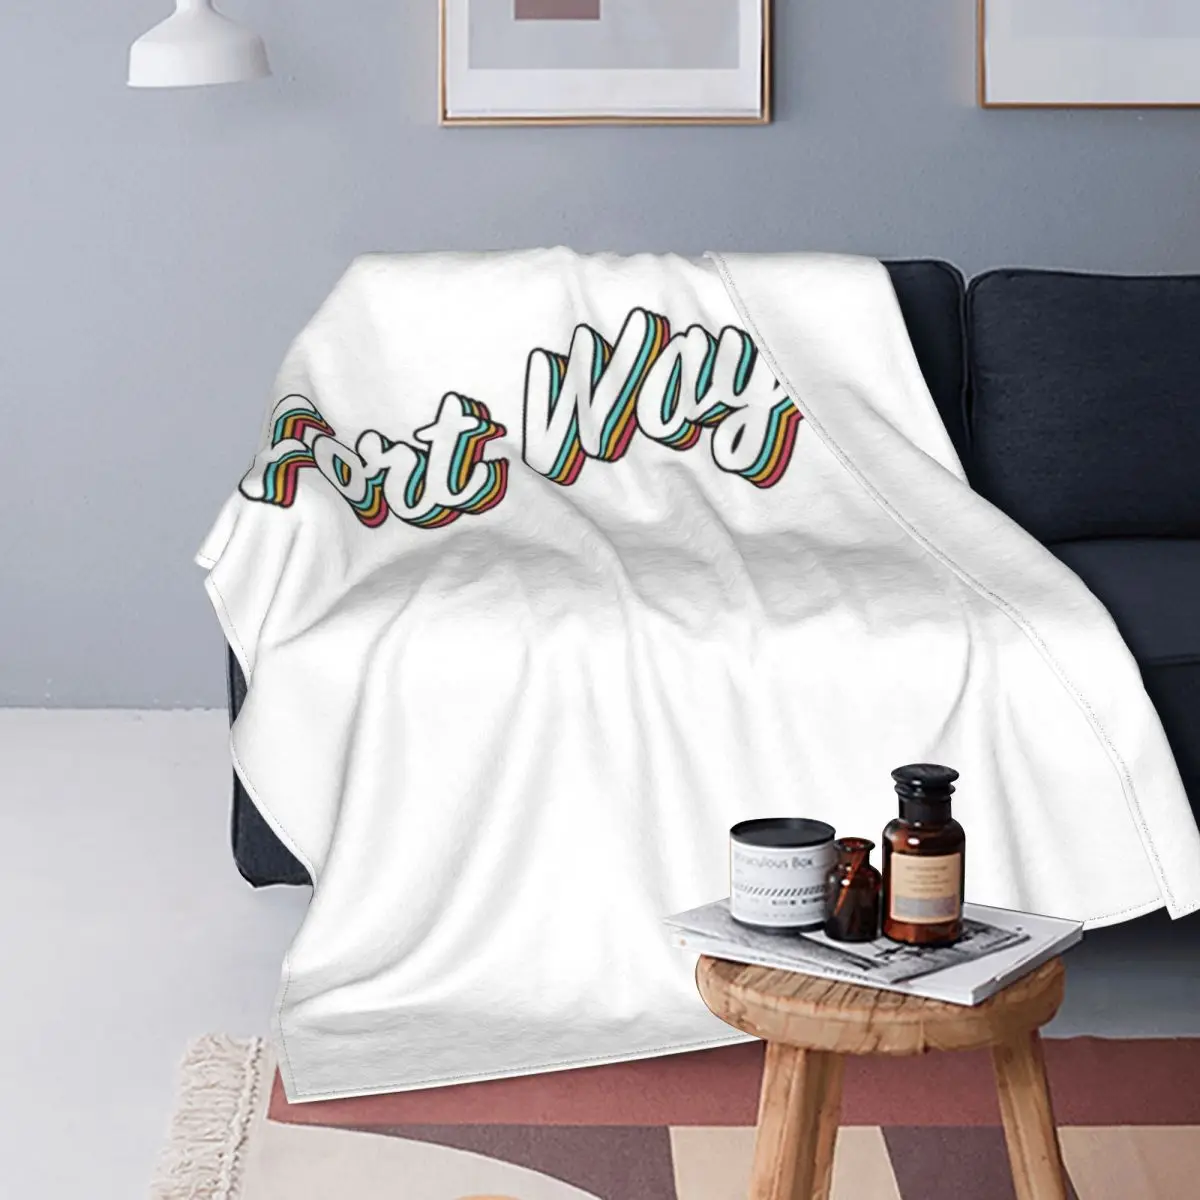 

Одеяло Форт Уэйн покрывало для кровати Клетчатое одеяло s диванное одеяло s двойное одеяло покрывала для кровати